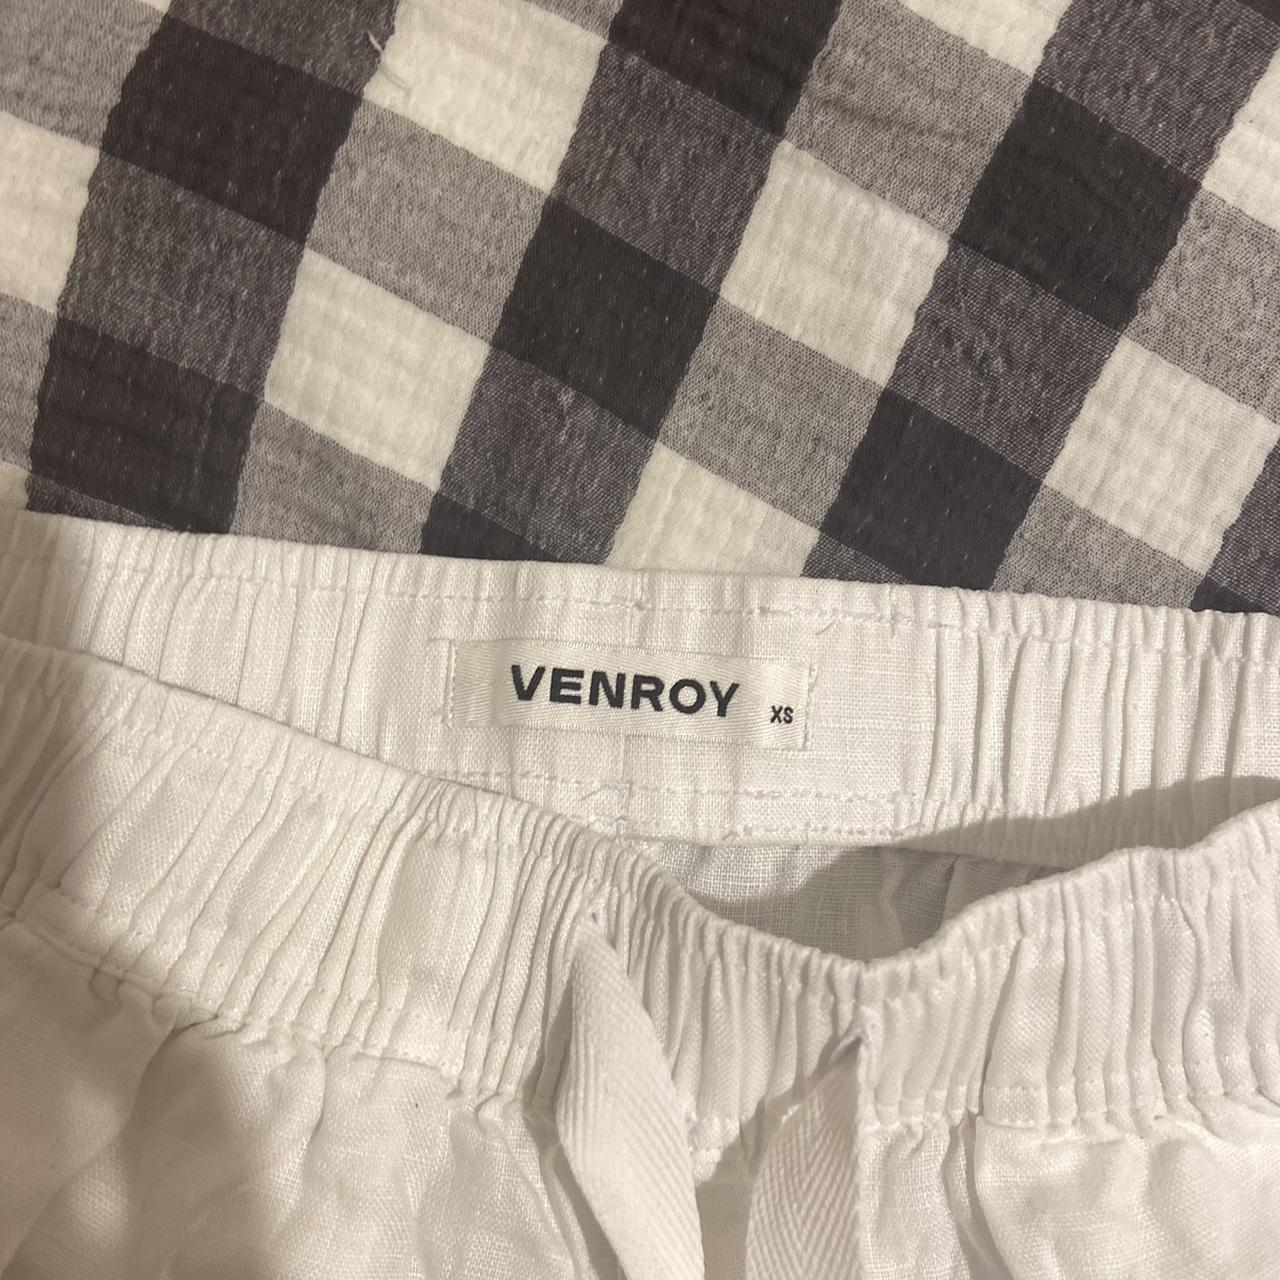 Venroy white linen high rise shorts Roll for low... - Depop